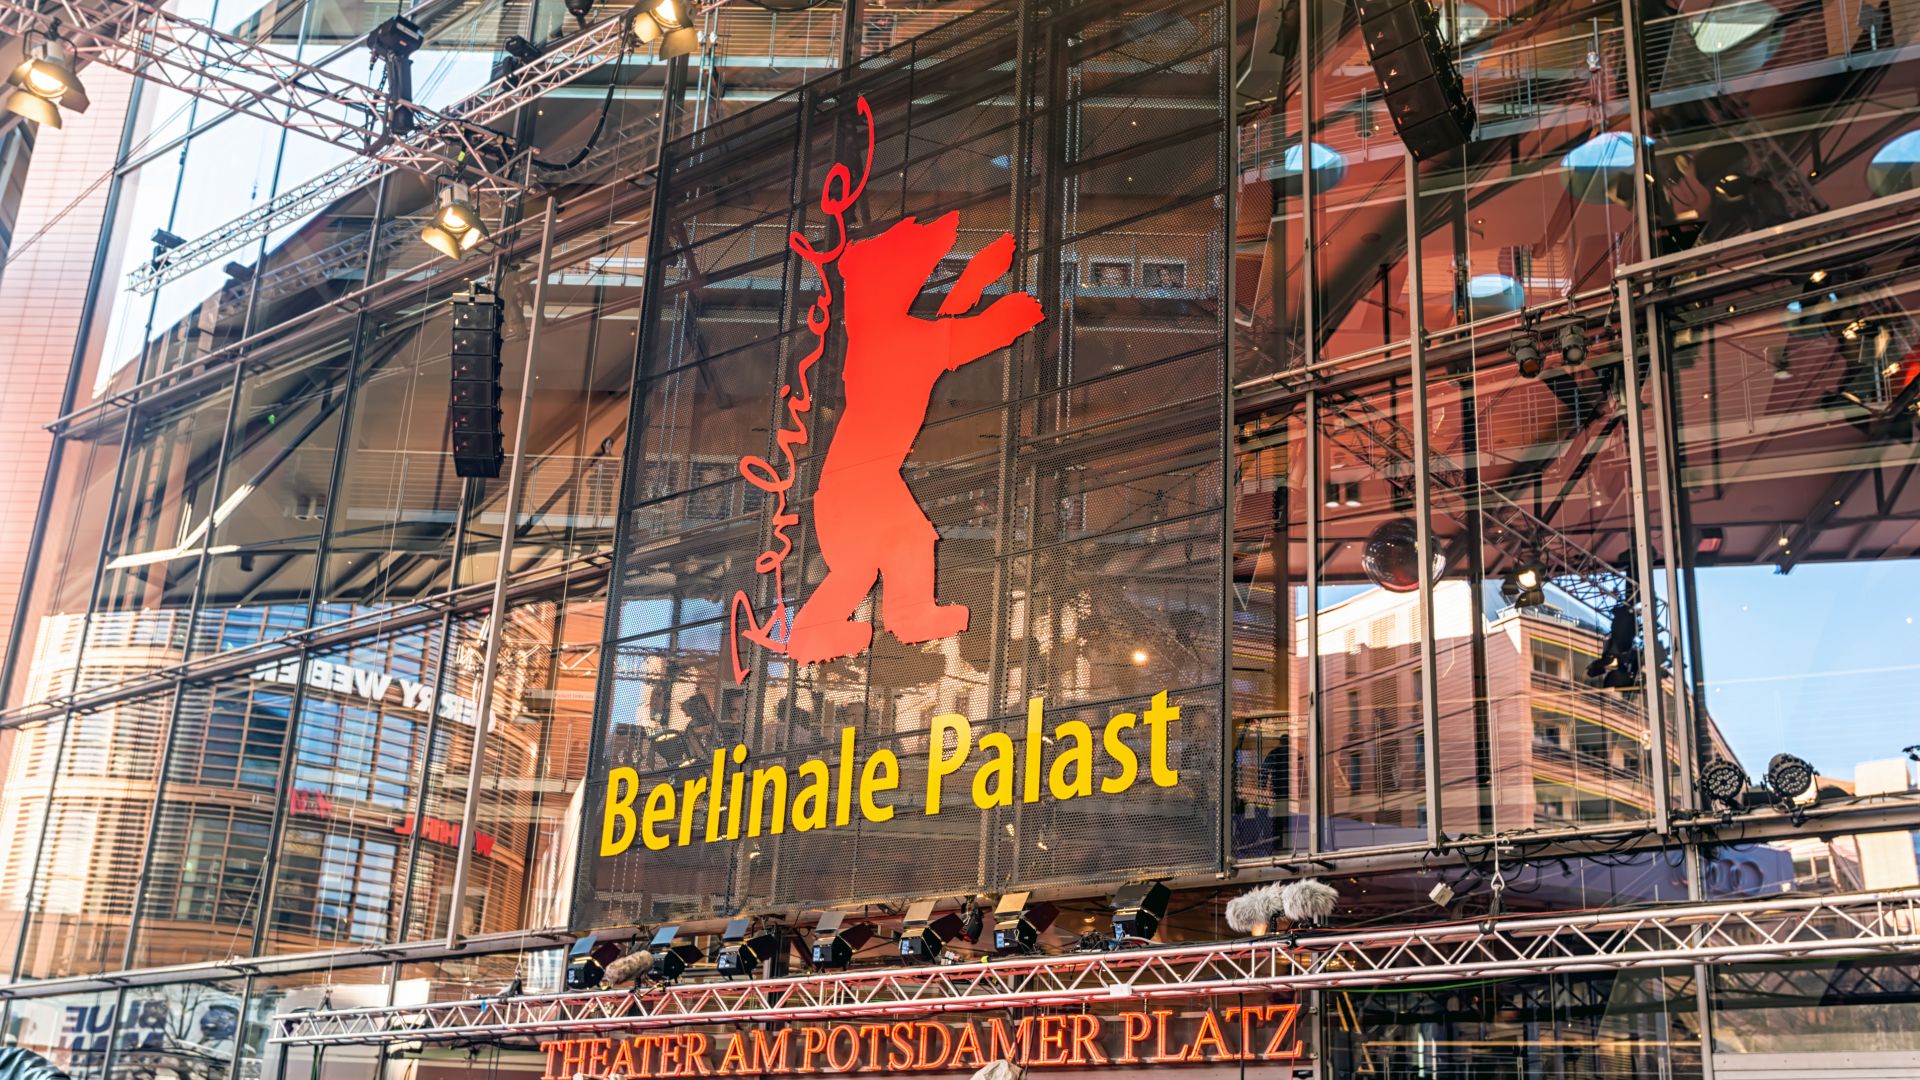  През 2022 г. кинофестивалът Берлинале ще се проведе в традиционен формат